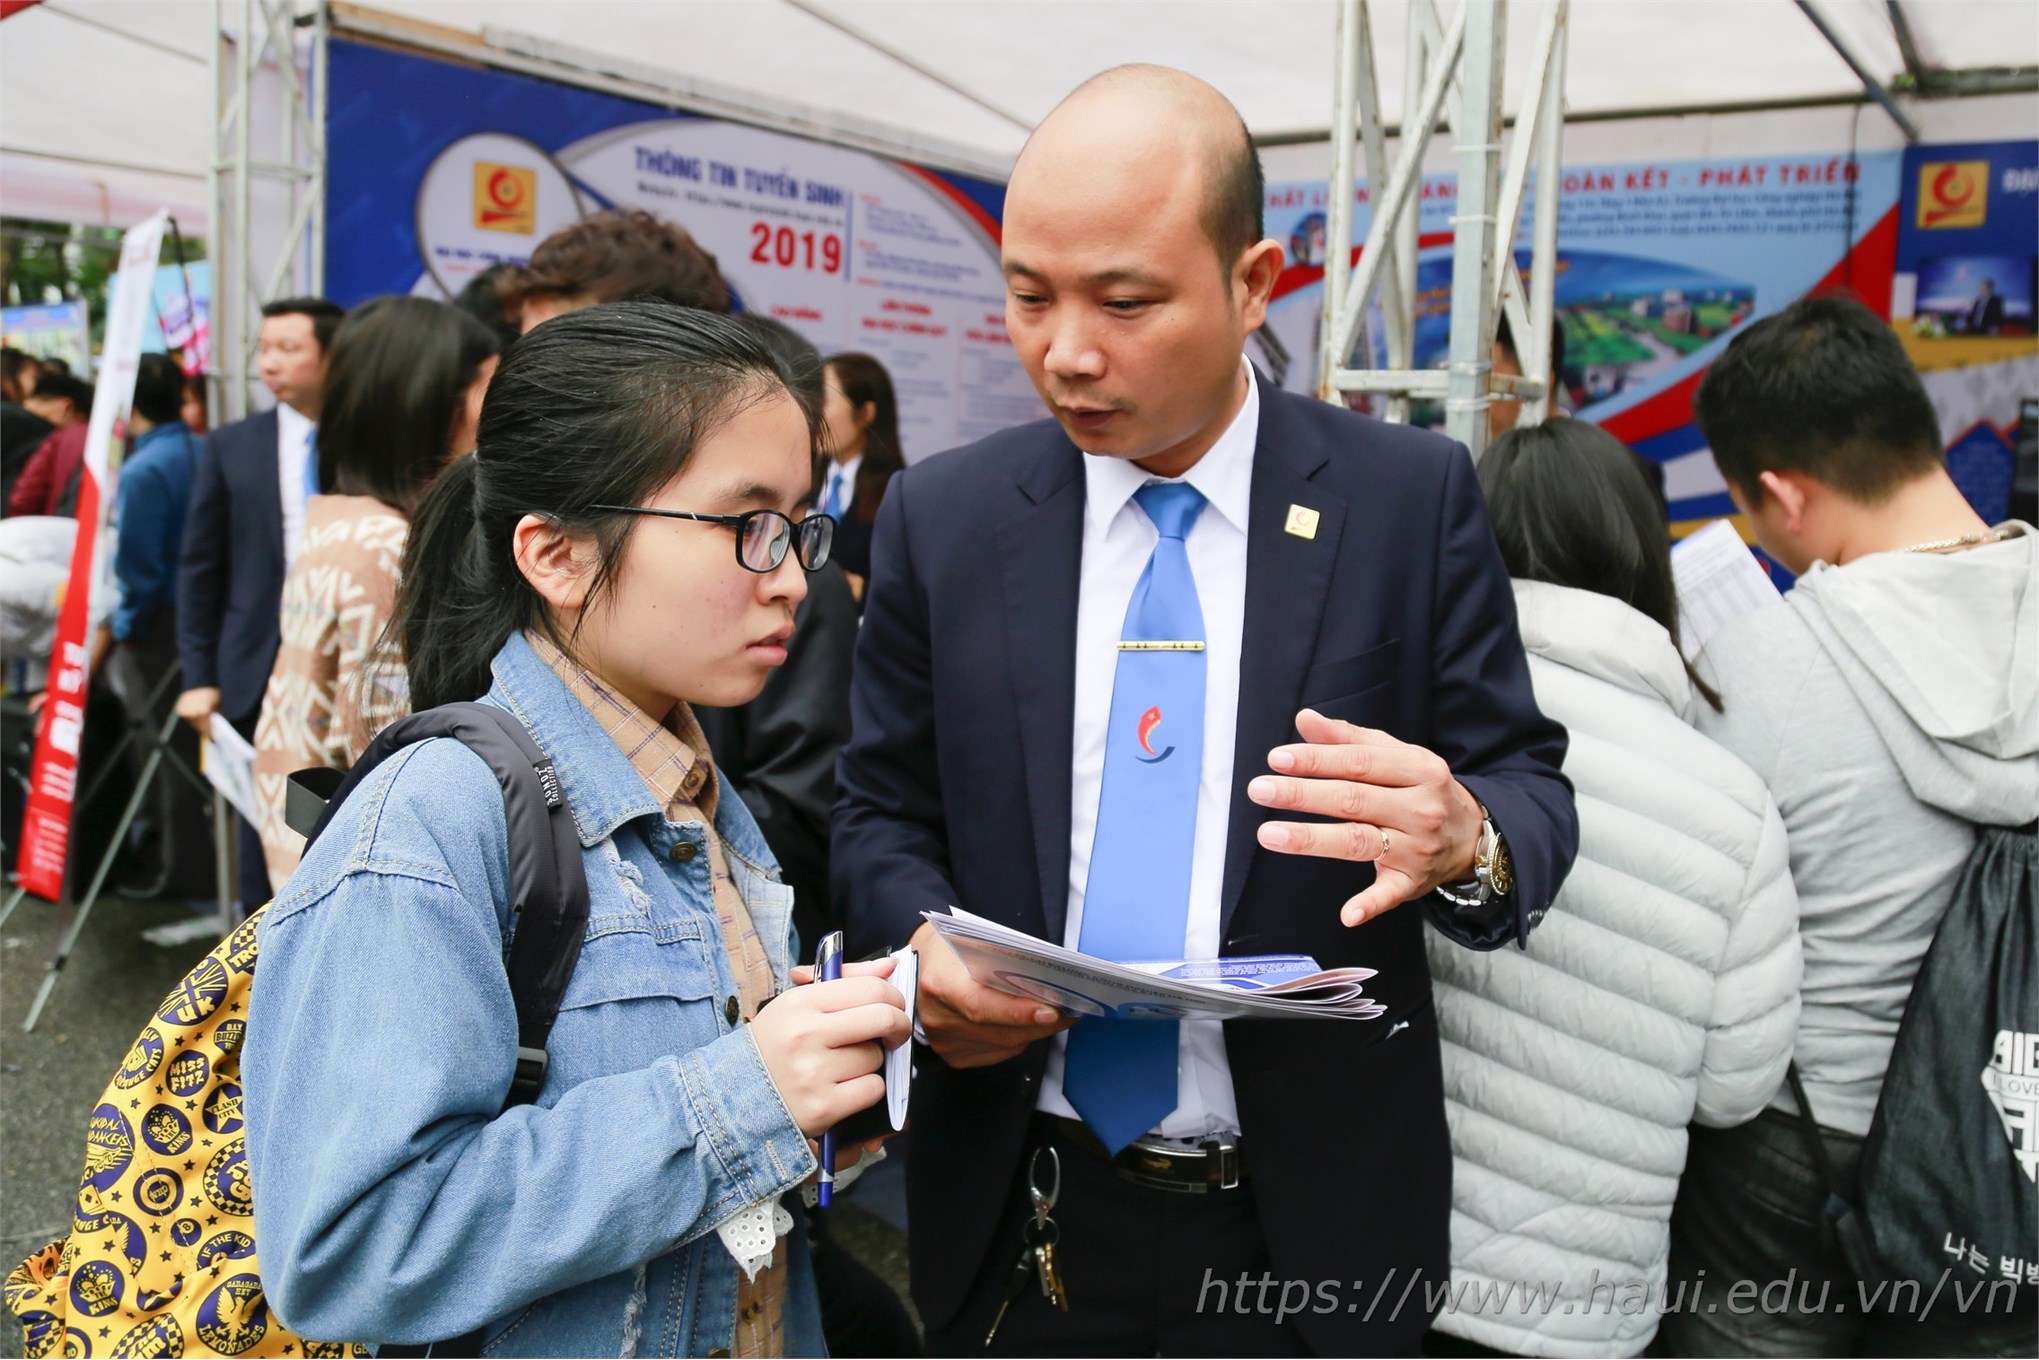 Sức hút của Đại học Công nghiệp Hà Nội tại Ngày hội tư vấn tuyển sinh - hướng nghiệp 2019